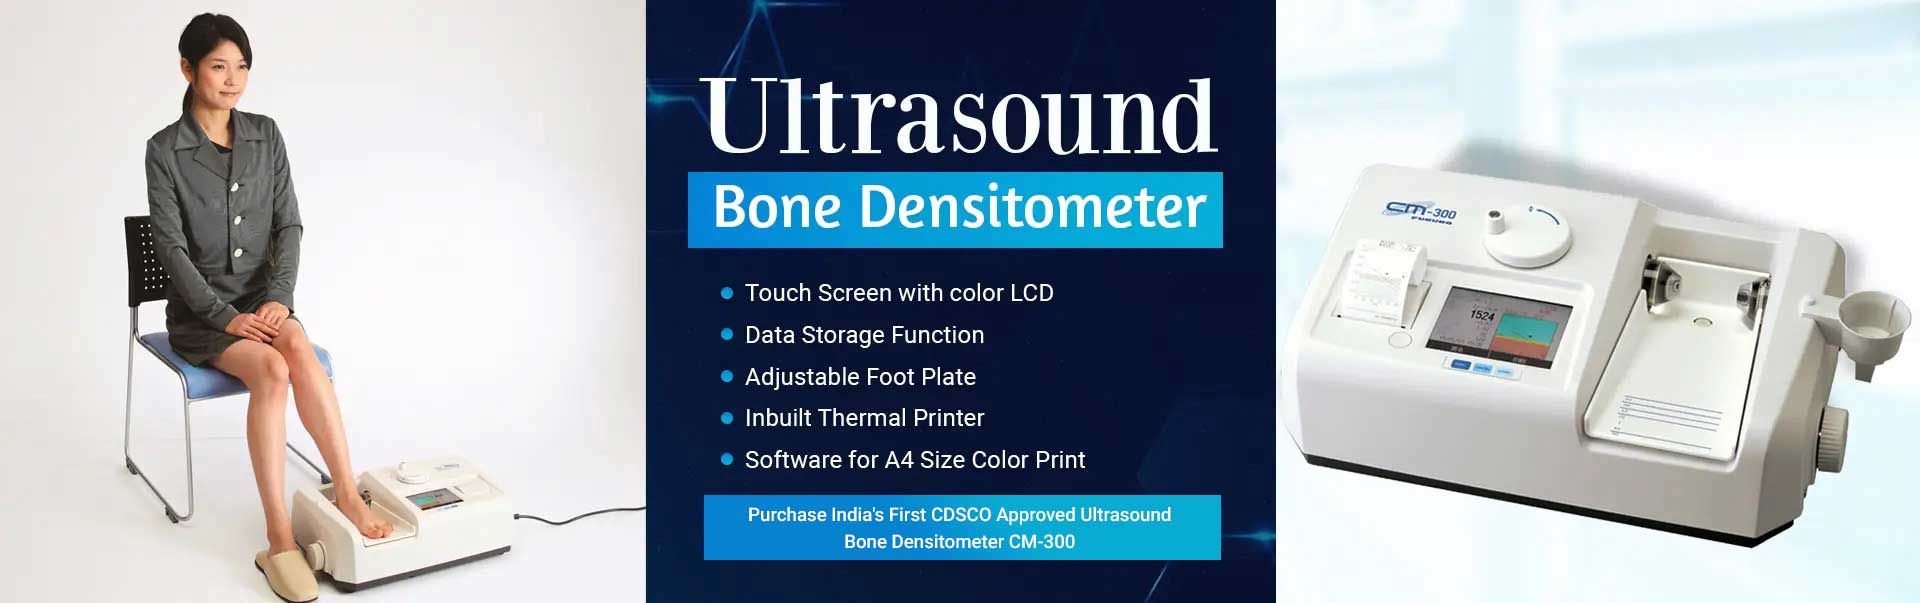 Ultrasound Bone Densitometer Manufacturers in Rourkela